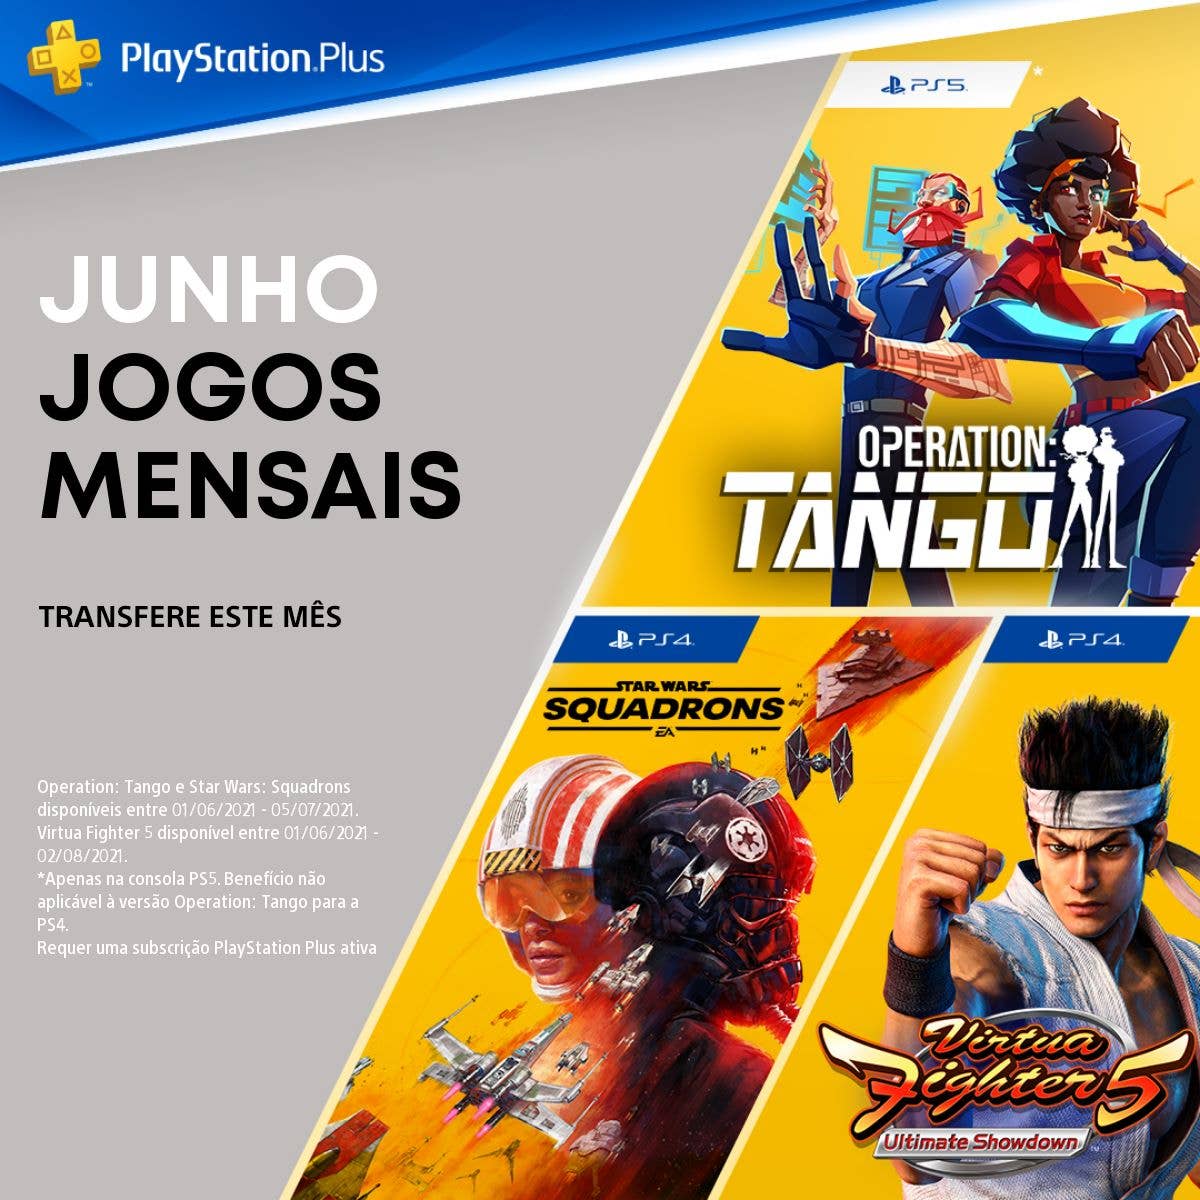 Operation: Tango, Virtua Fighter 5: Ultimate Showdown e Star Wars Squadrons  são os jogos gratuitos da PS Plus em junho de 2021